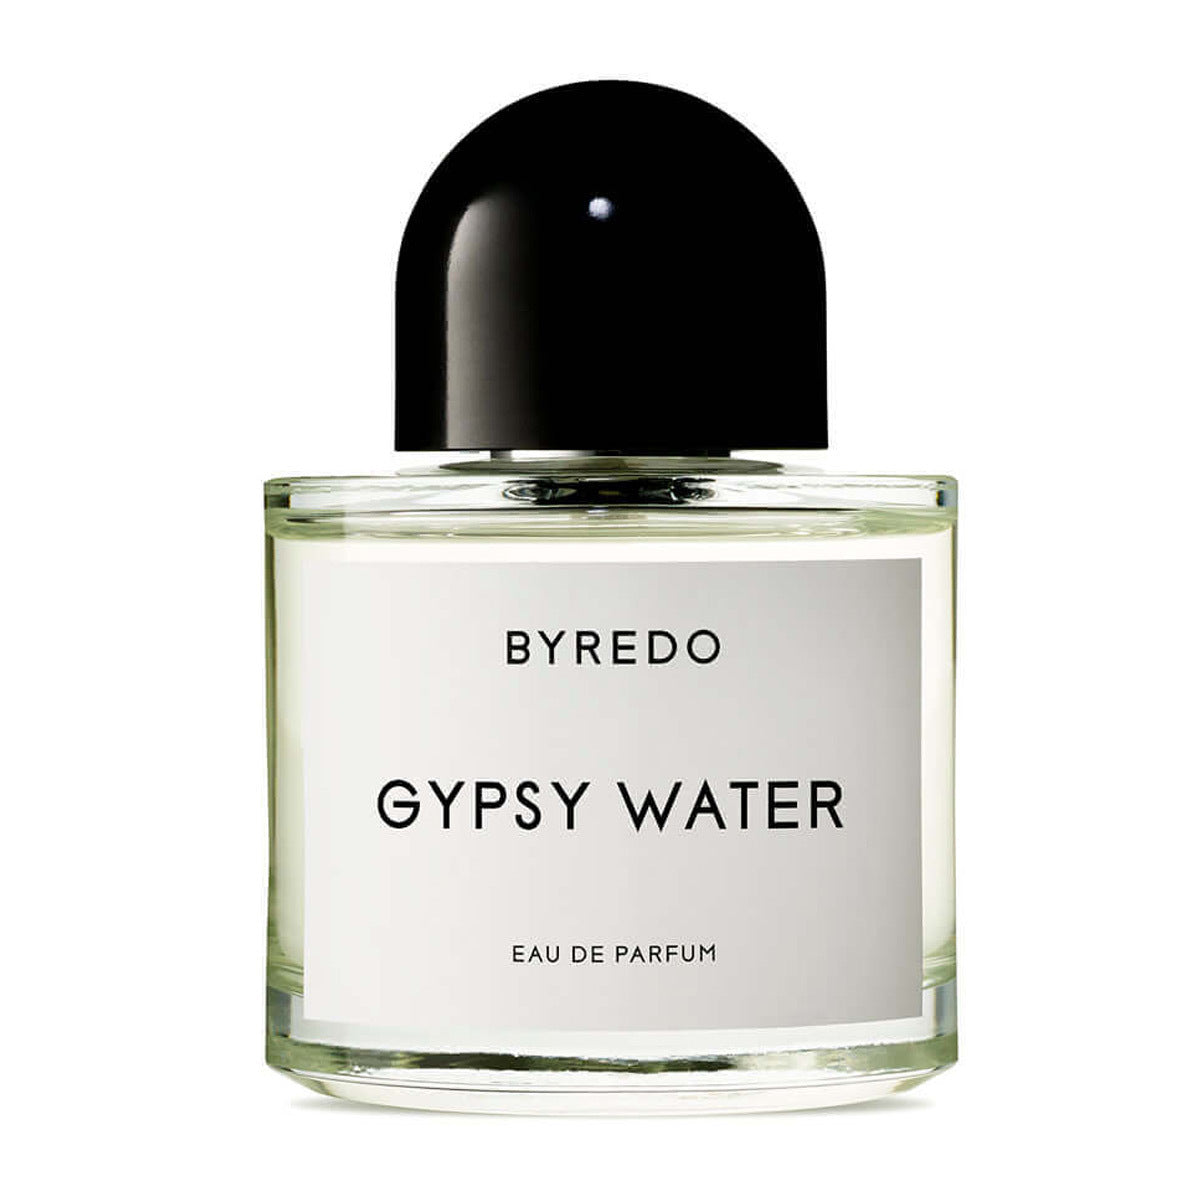 Primary image of Gypsy Water Eau de Parfum